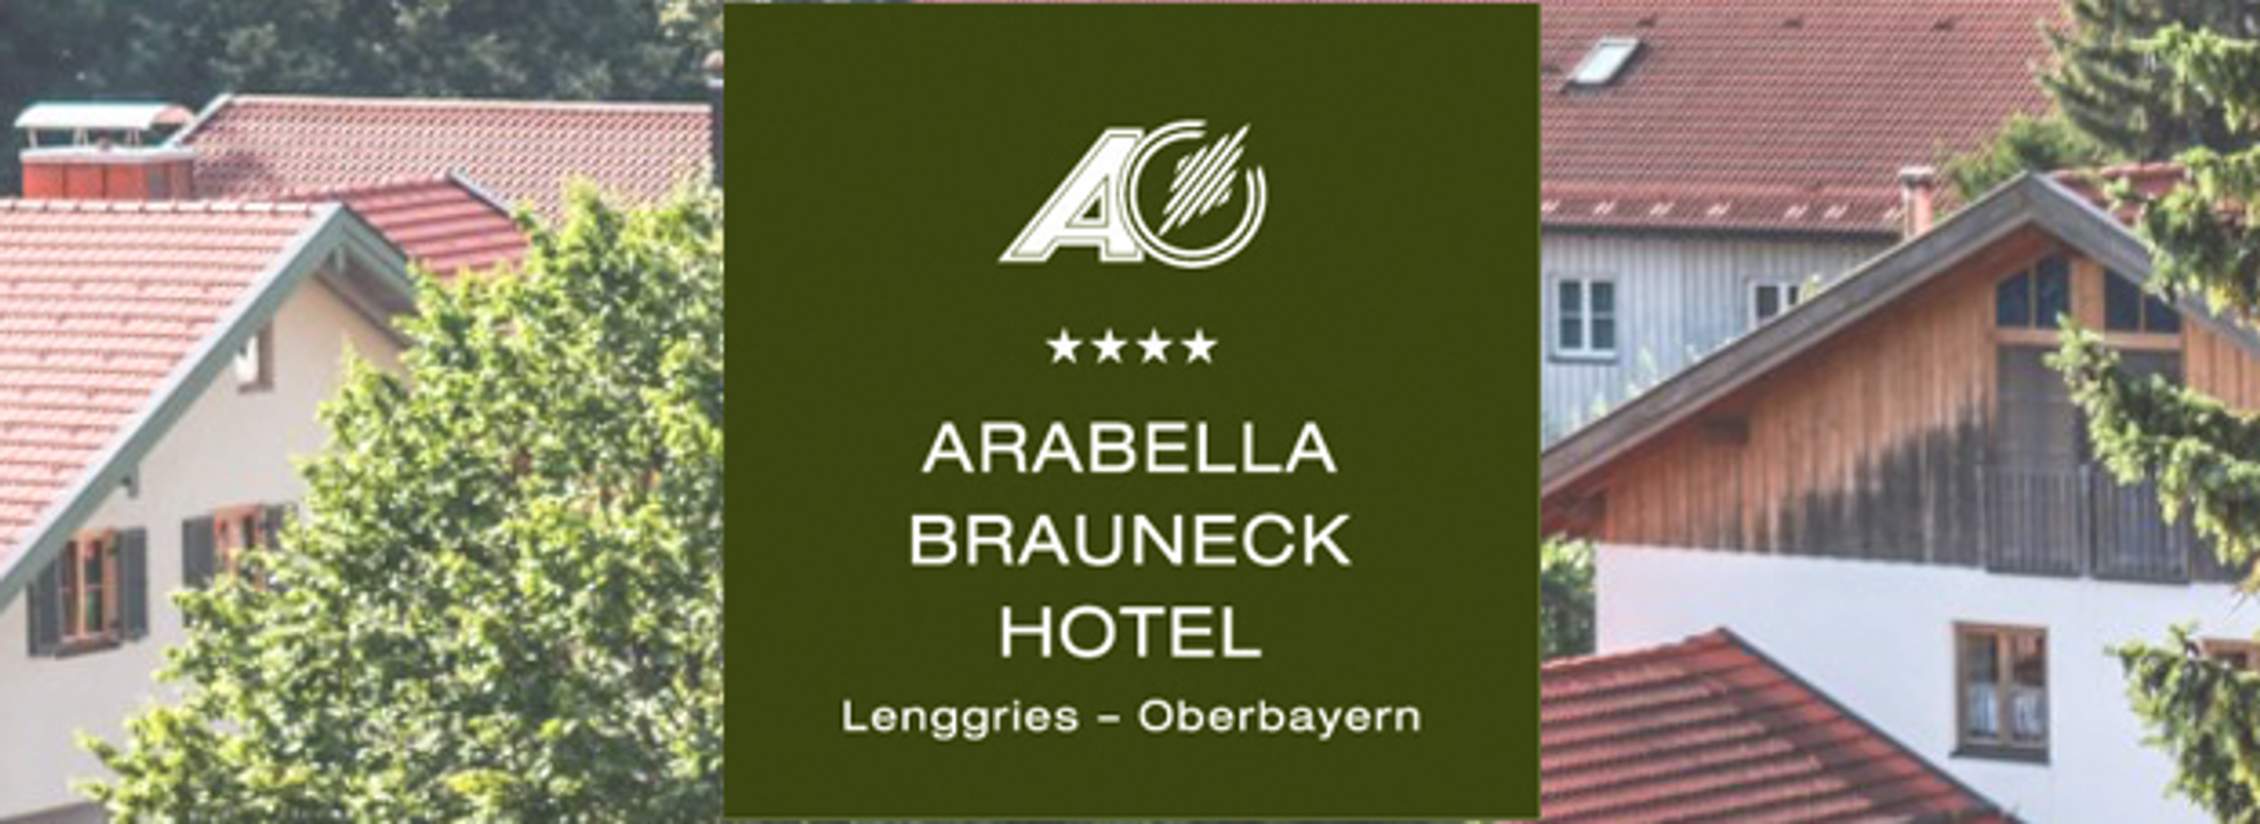 Arabella Brauneck Hotel im Tölzer Land in Oberbayern